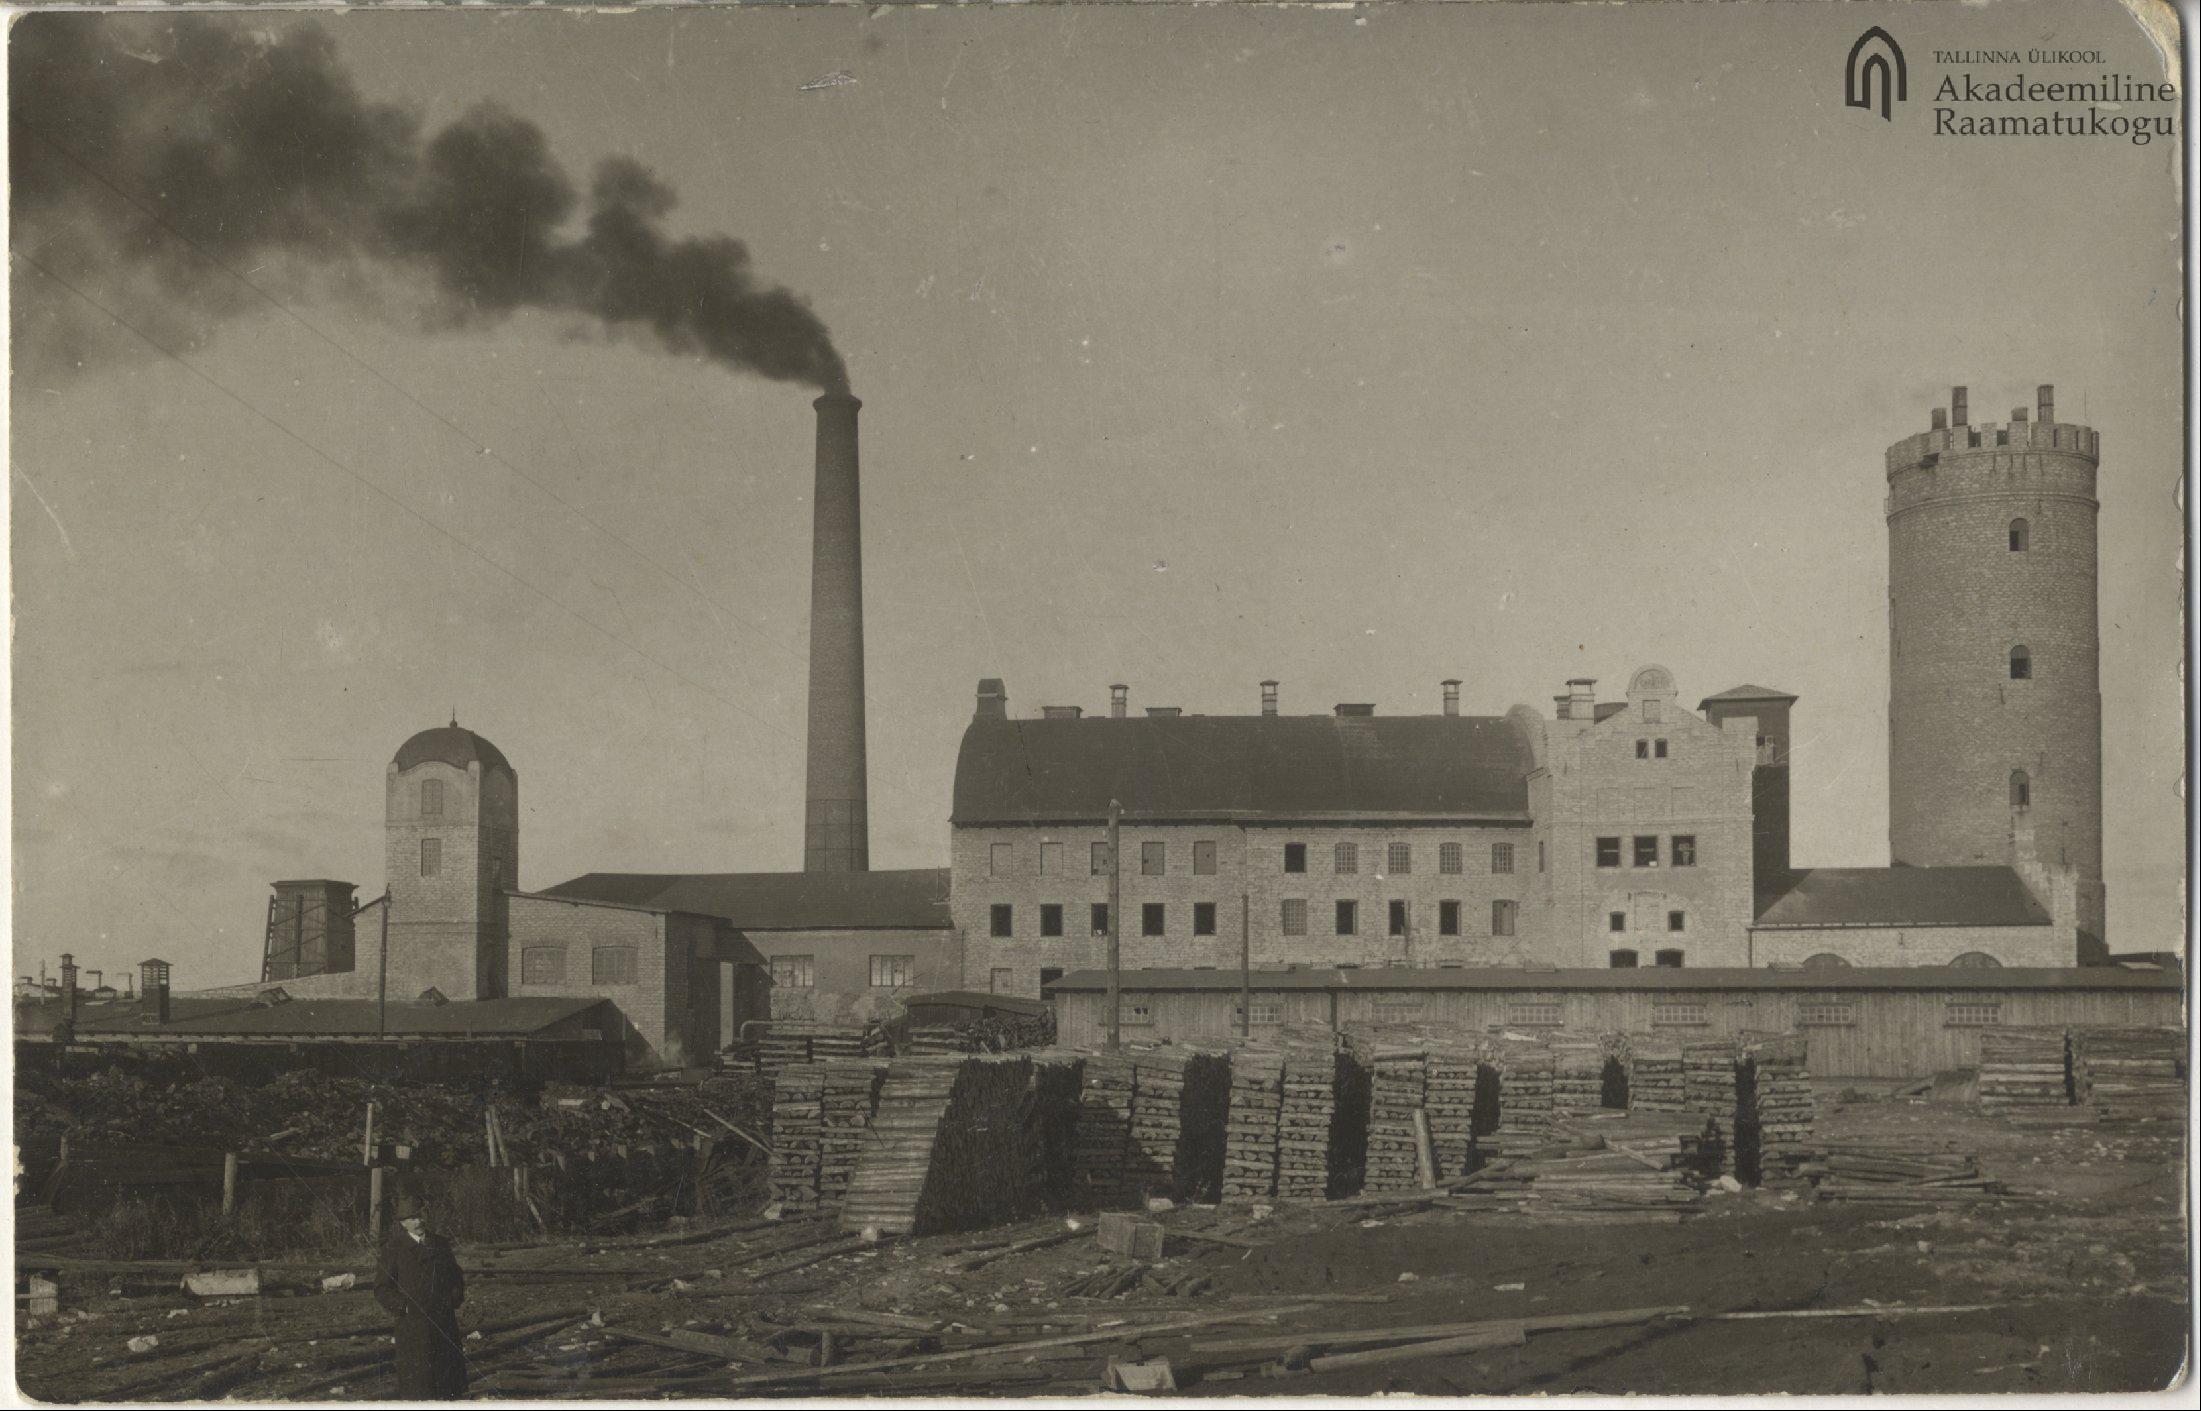 Tallinn. Paper factory